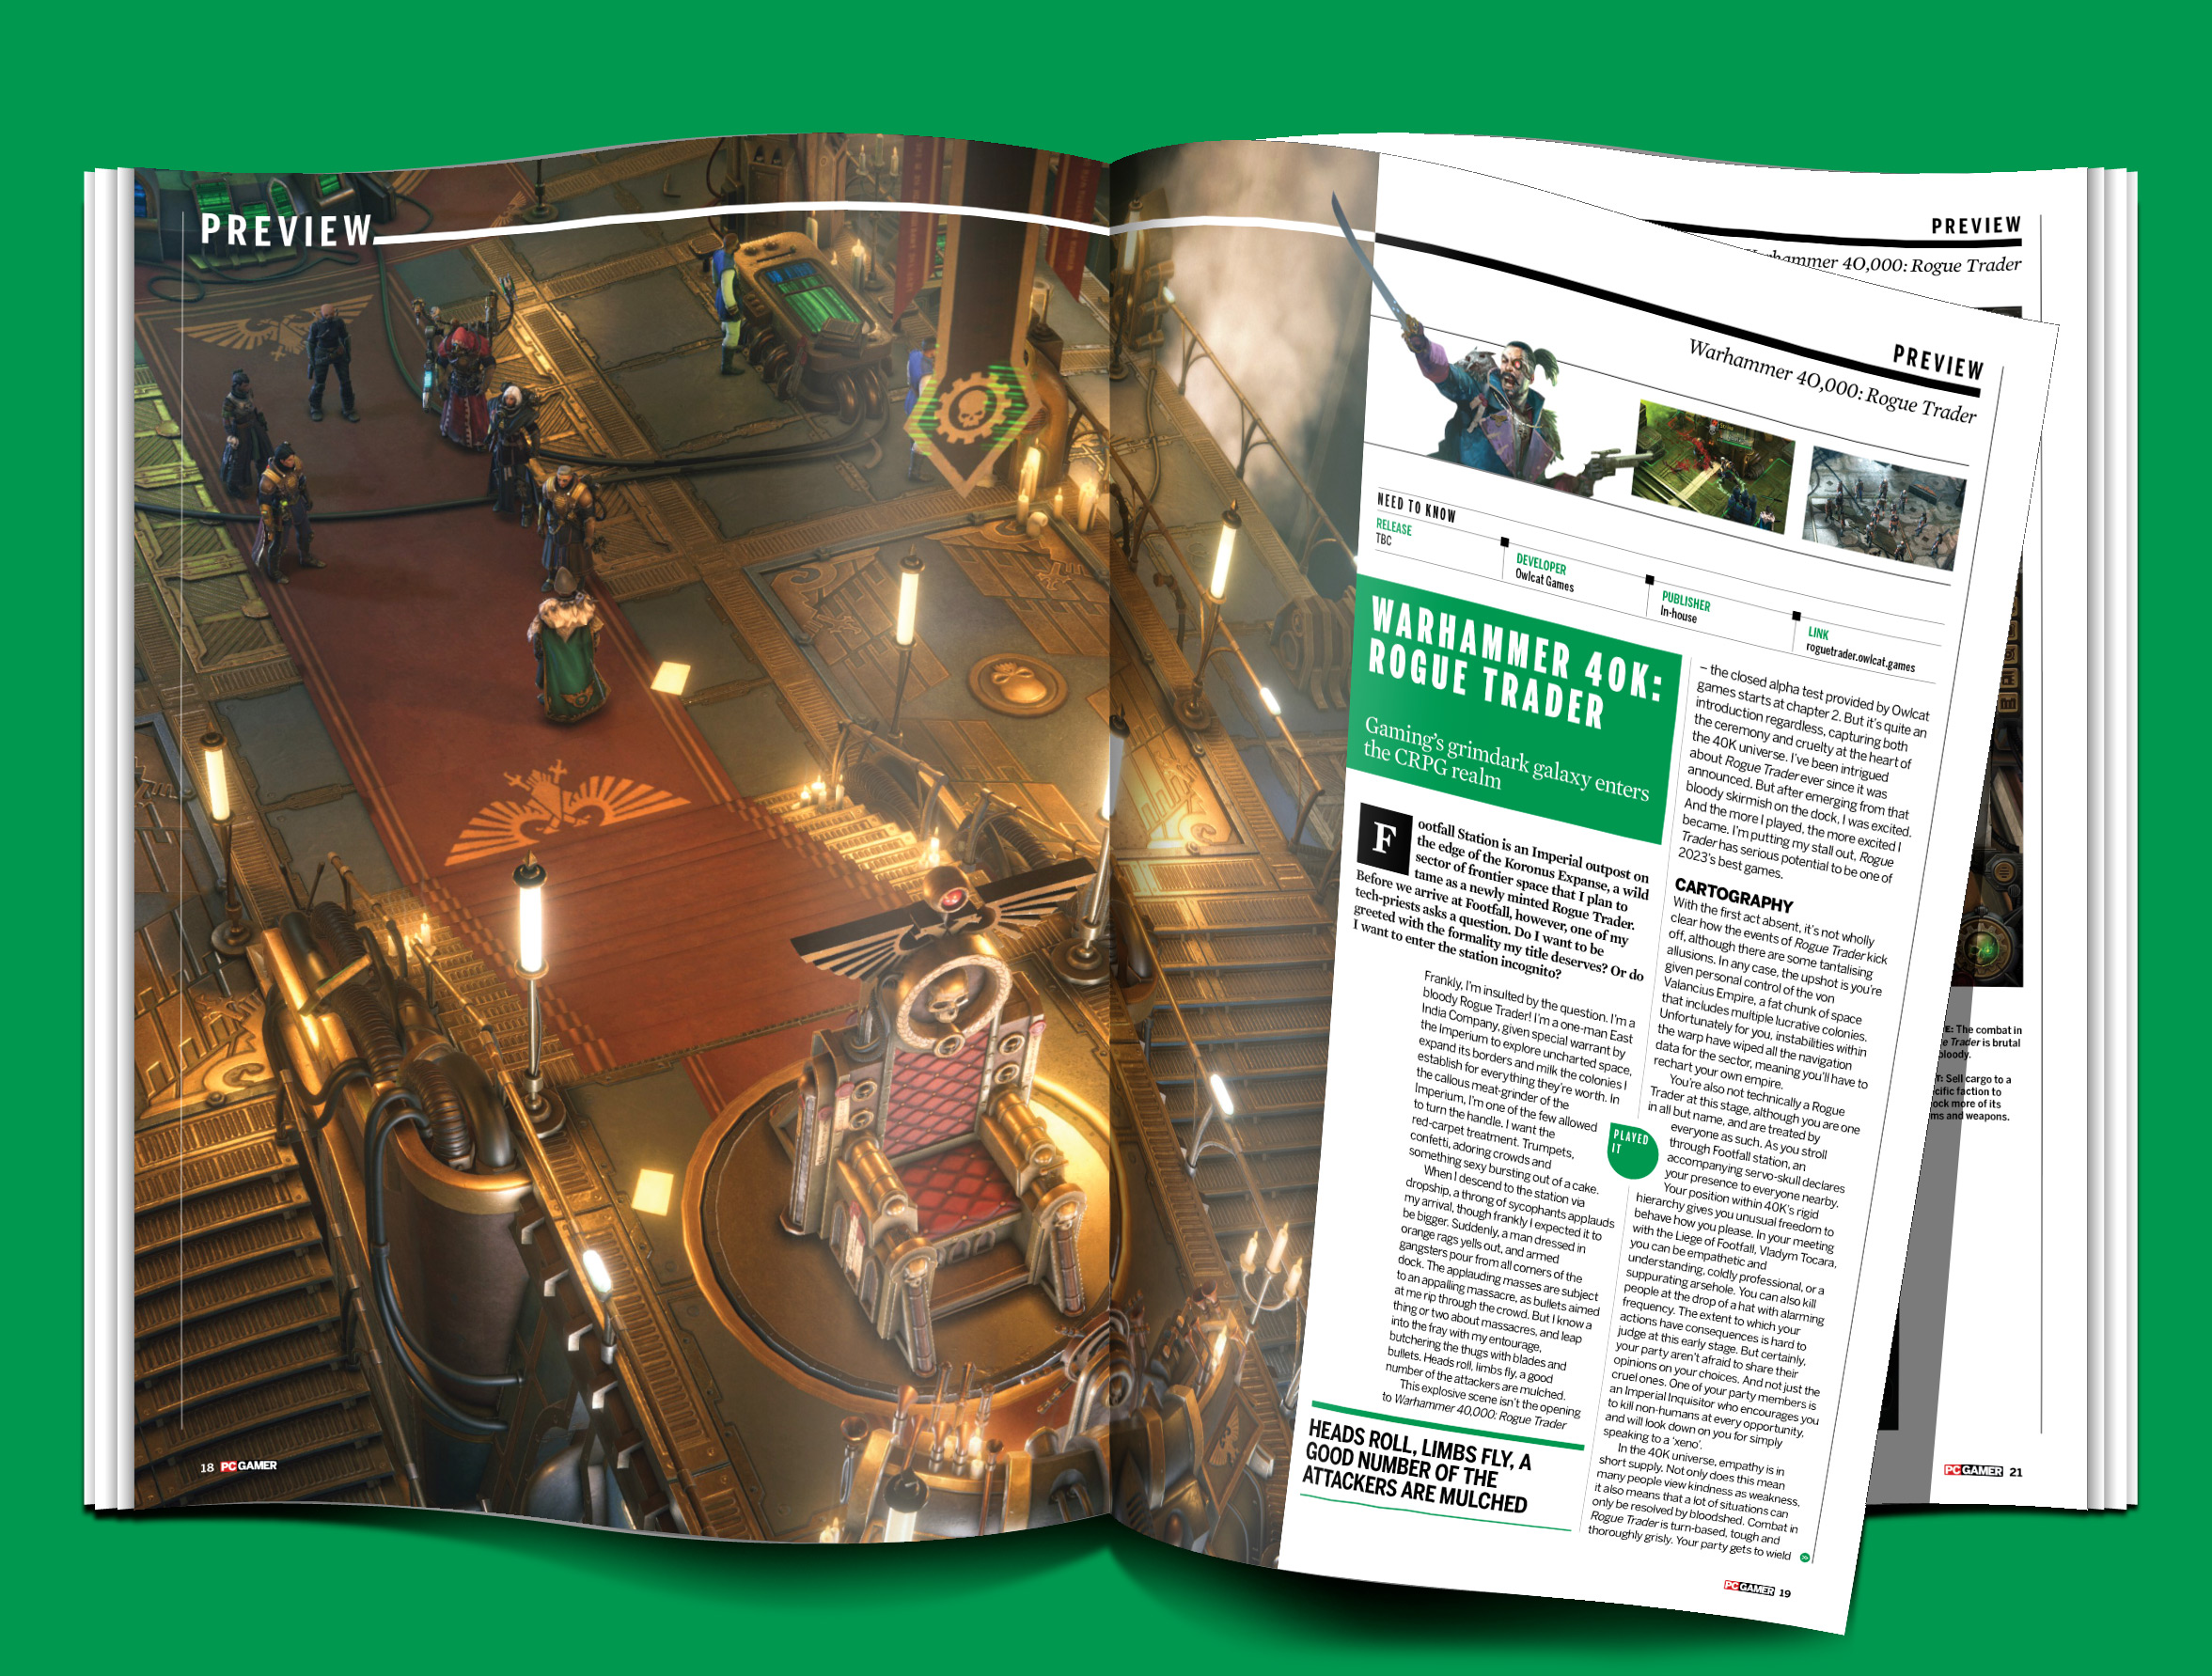 PC Gamer magazine issue 380 Warhammer 40,000: Rogue Trader spread